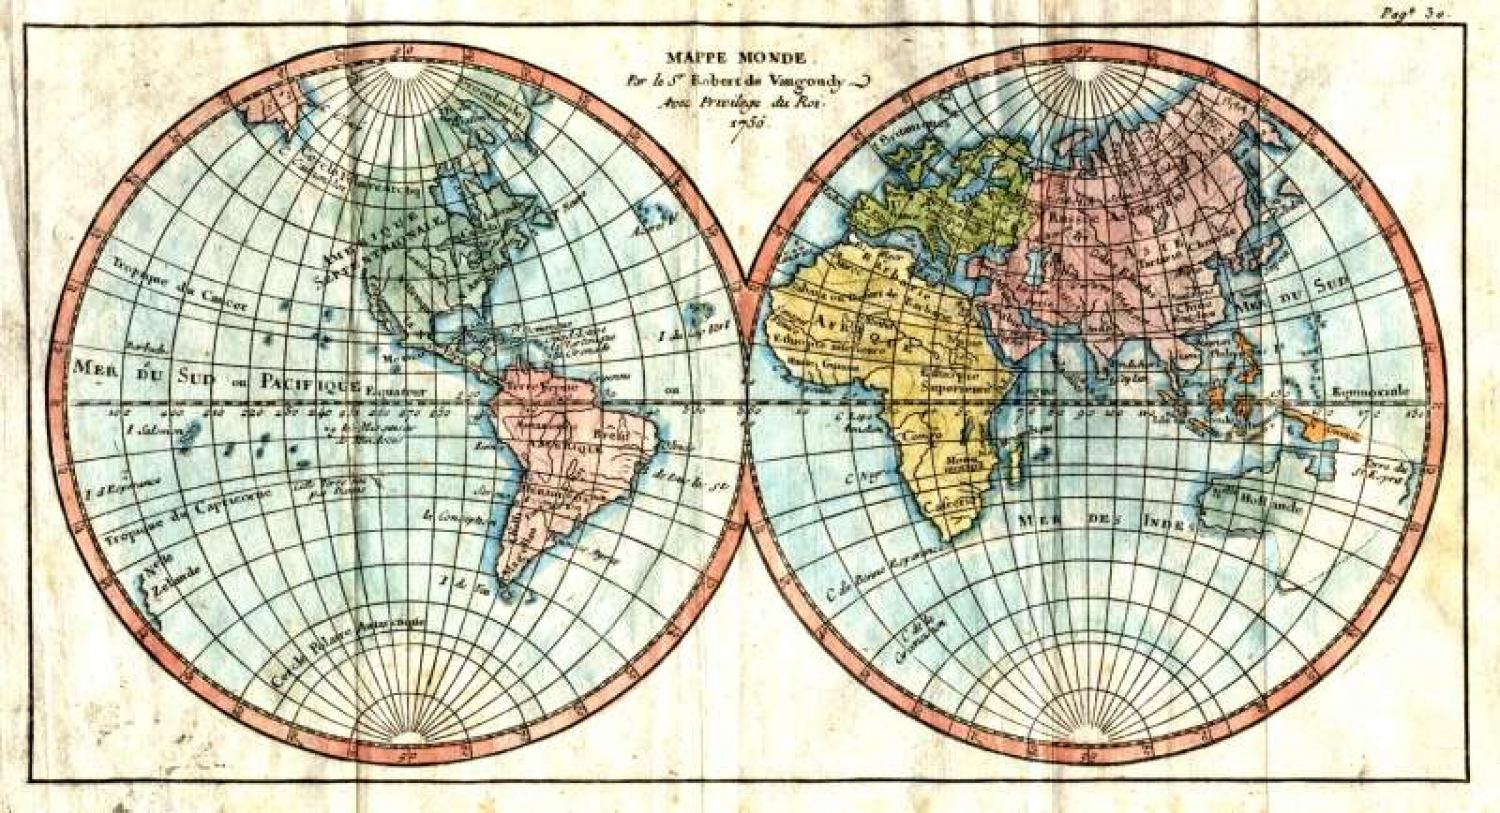 SOLD Mappe Monde, Amerique Septentrionale, Amerique Meridionale, L'Europe, Asie, Afrique.